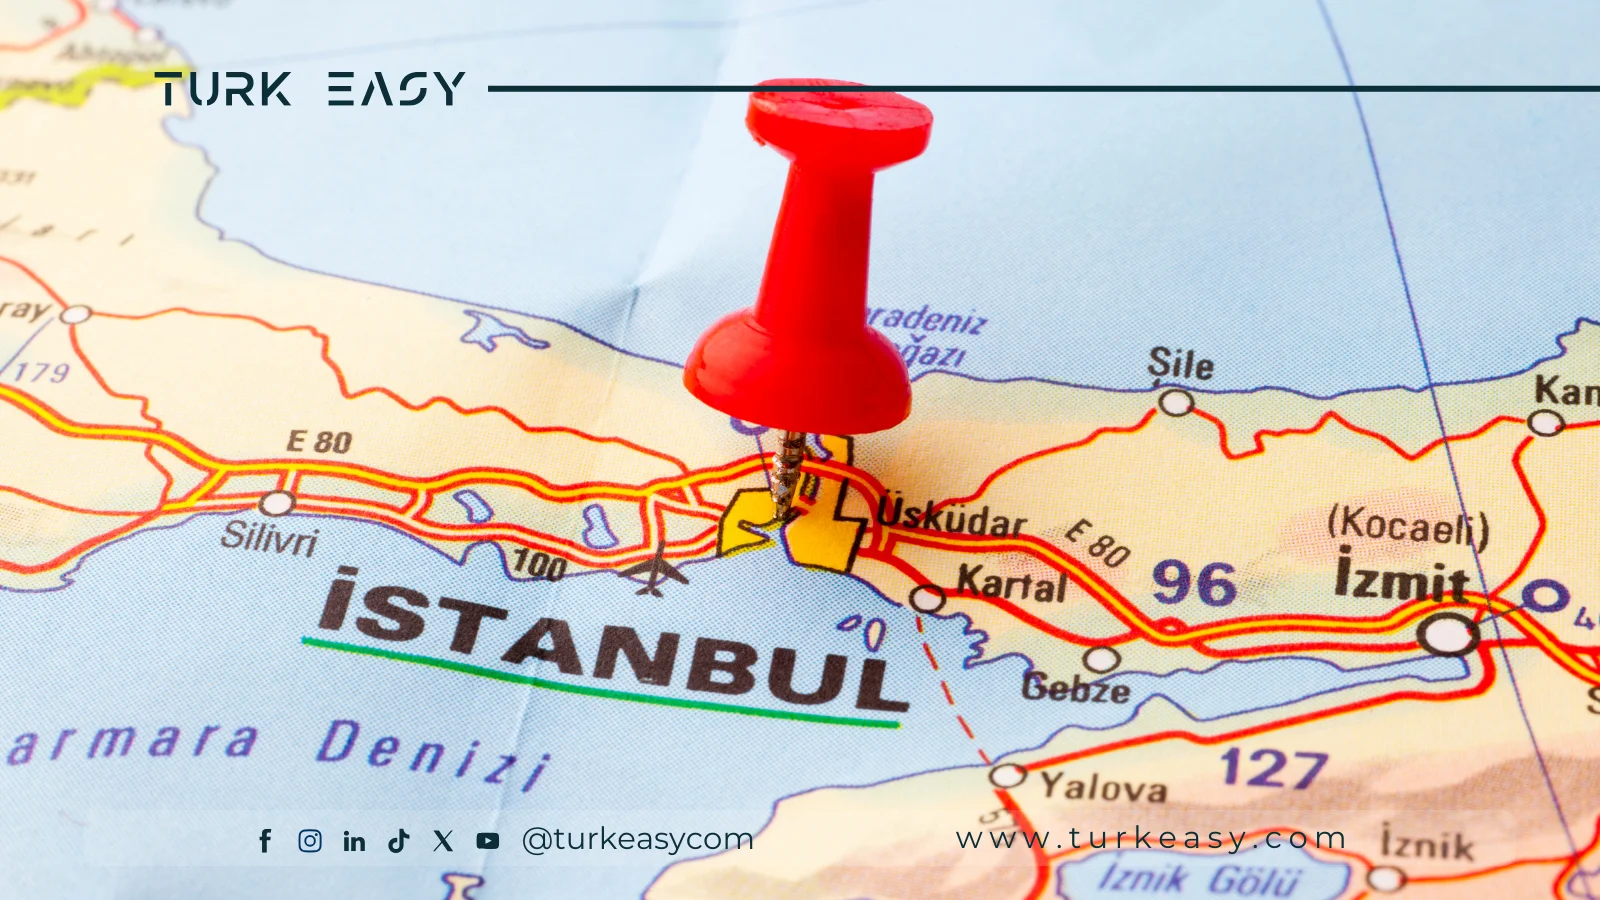 Транспорт в Стамбуле - Руководство по передвижению в Стамбуле